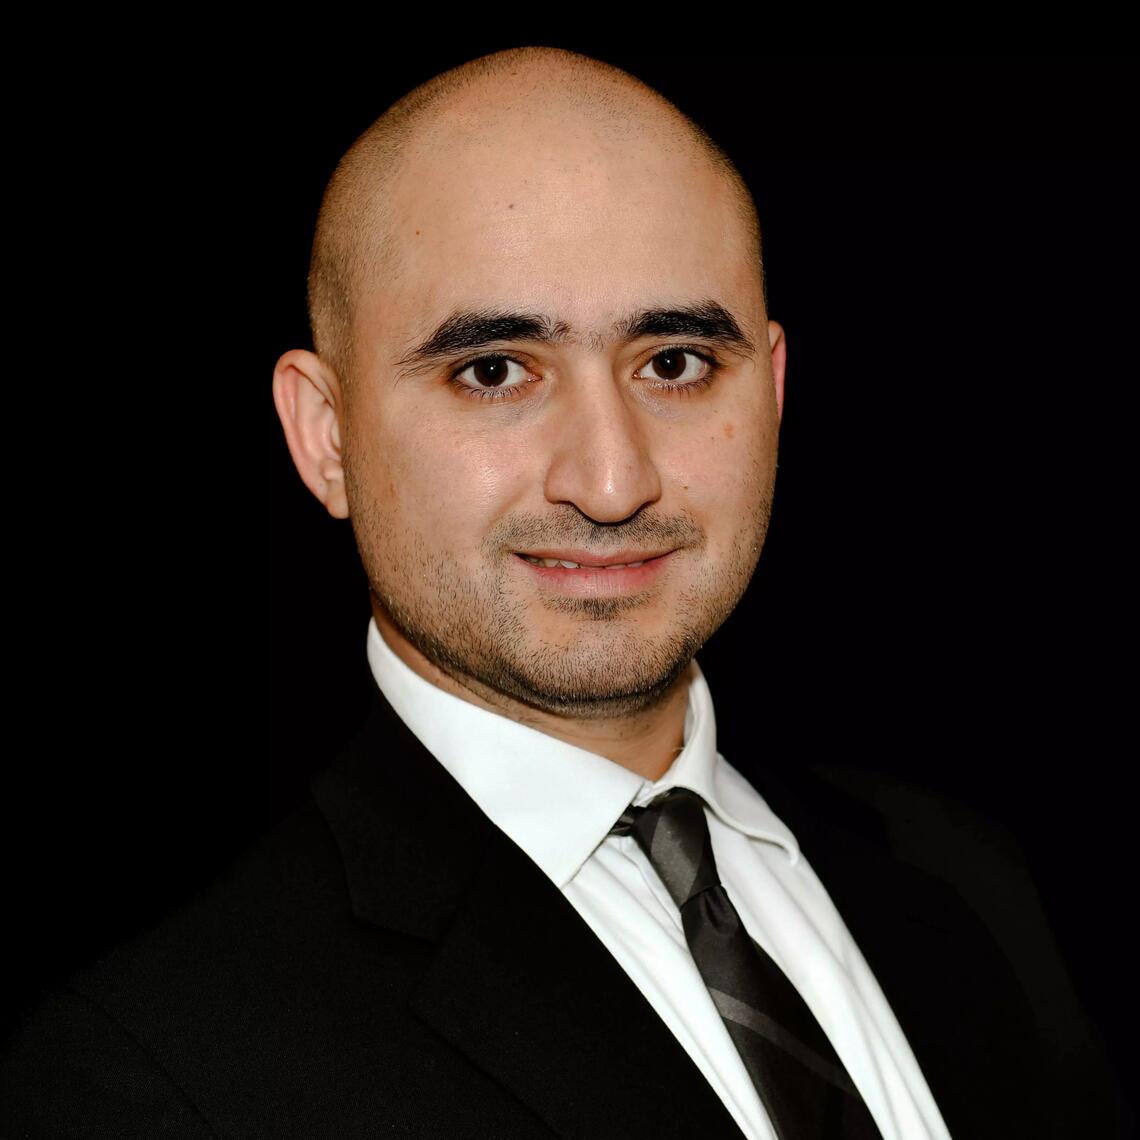 Dr. Mohammed Mosli